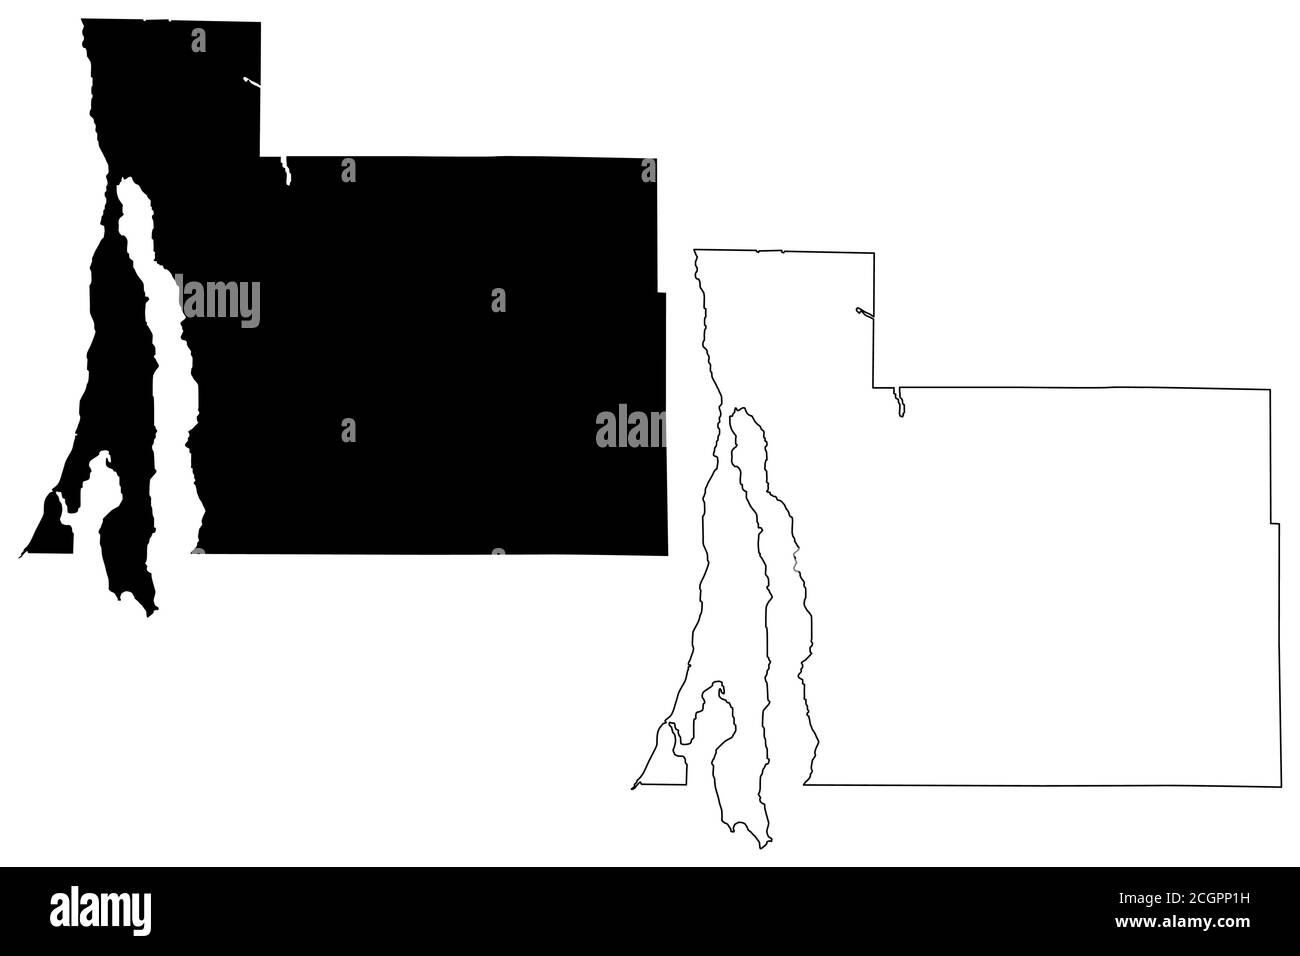 Antrim County, Michigan (comté des États-Unis, États-Unis d'Amérique, États-Unis, États-Unis, États-Unis) carte illustration vectorielle, scribble sketch carte Antrim Illustration de Vecteur